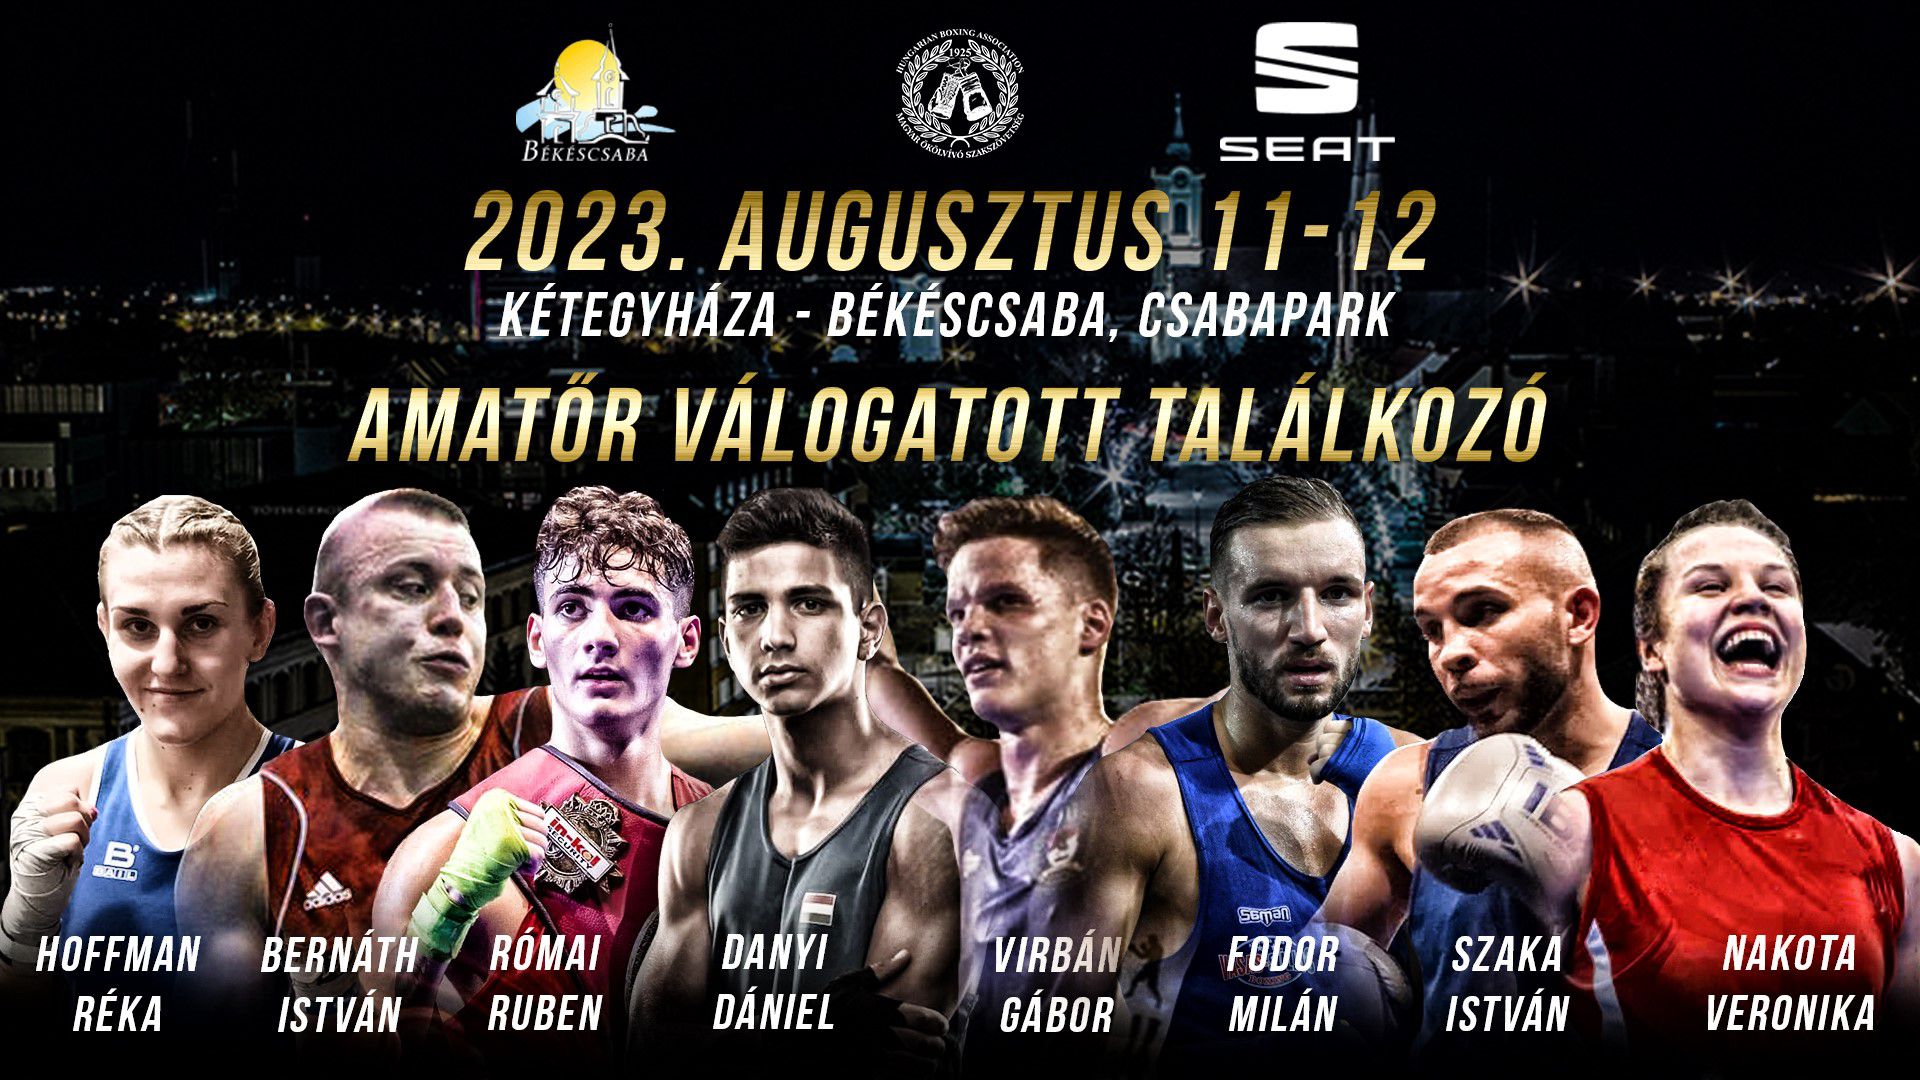 Magyar boksz: augusztusban összecsapnak a válogatott kerettagok